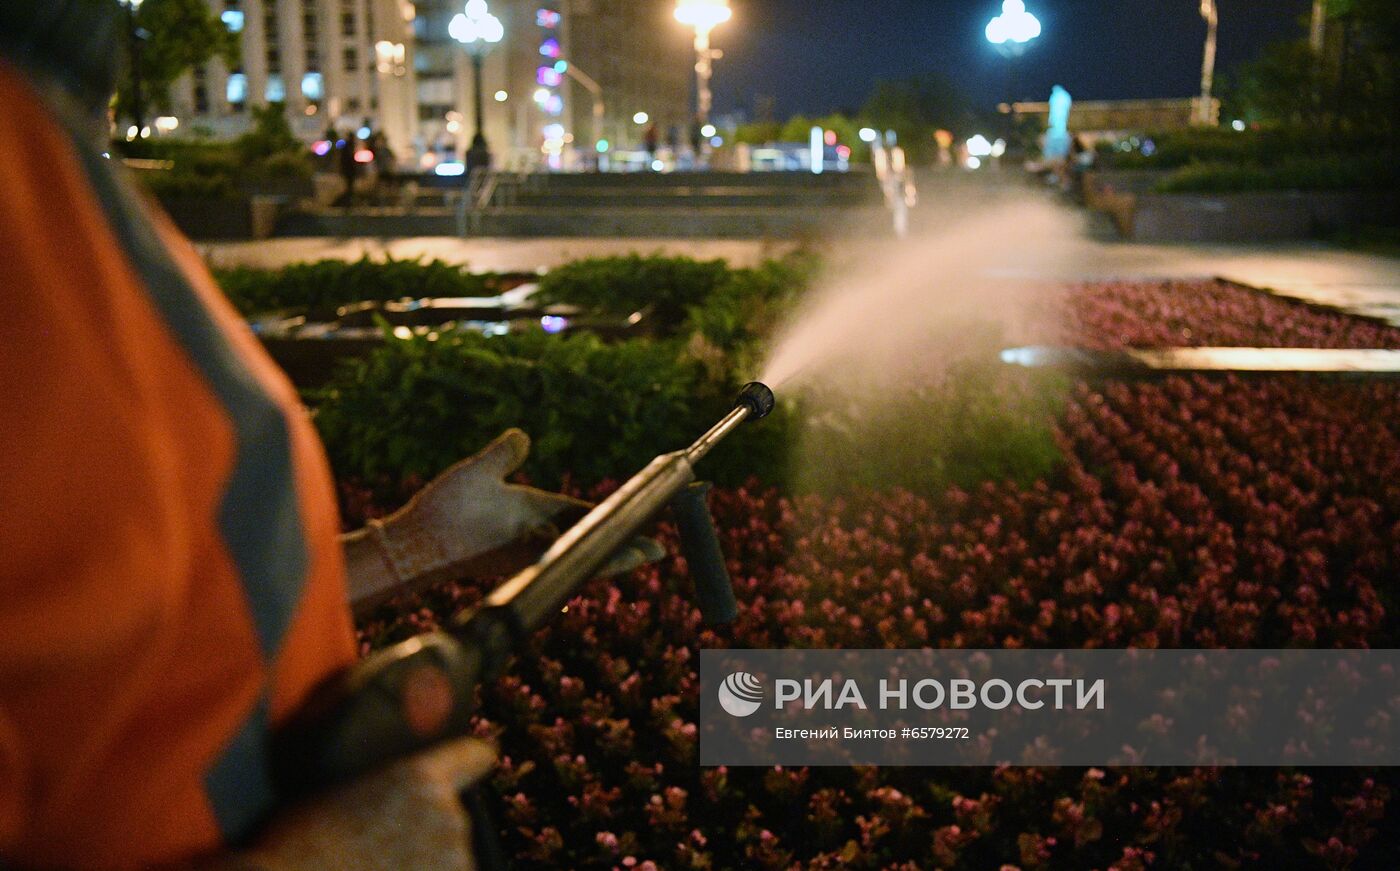 Коммунальные службы поливают цветники в Москве